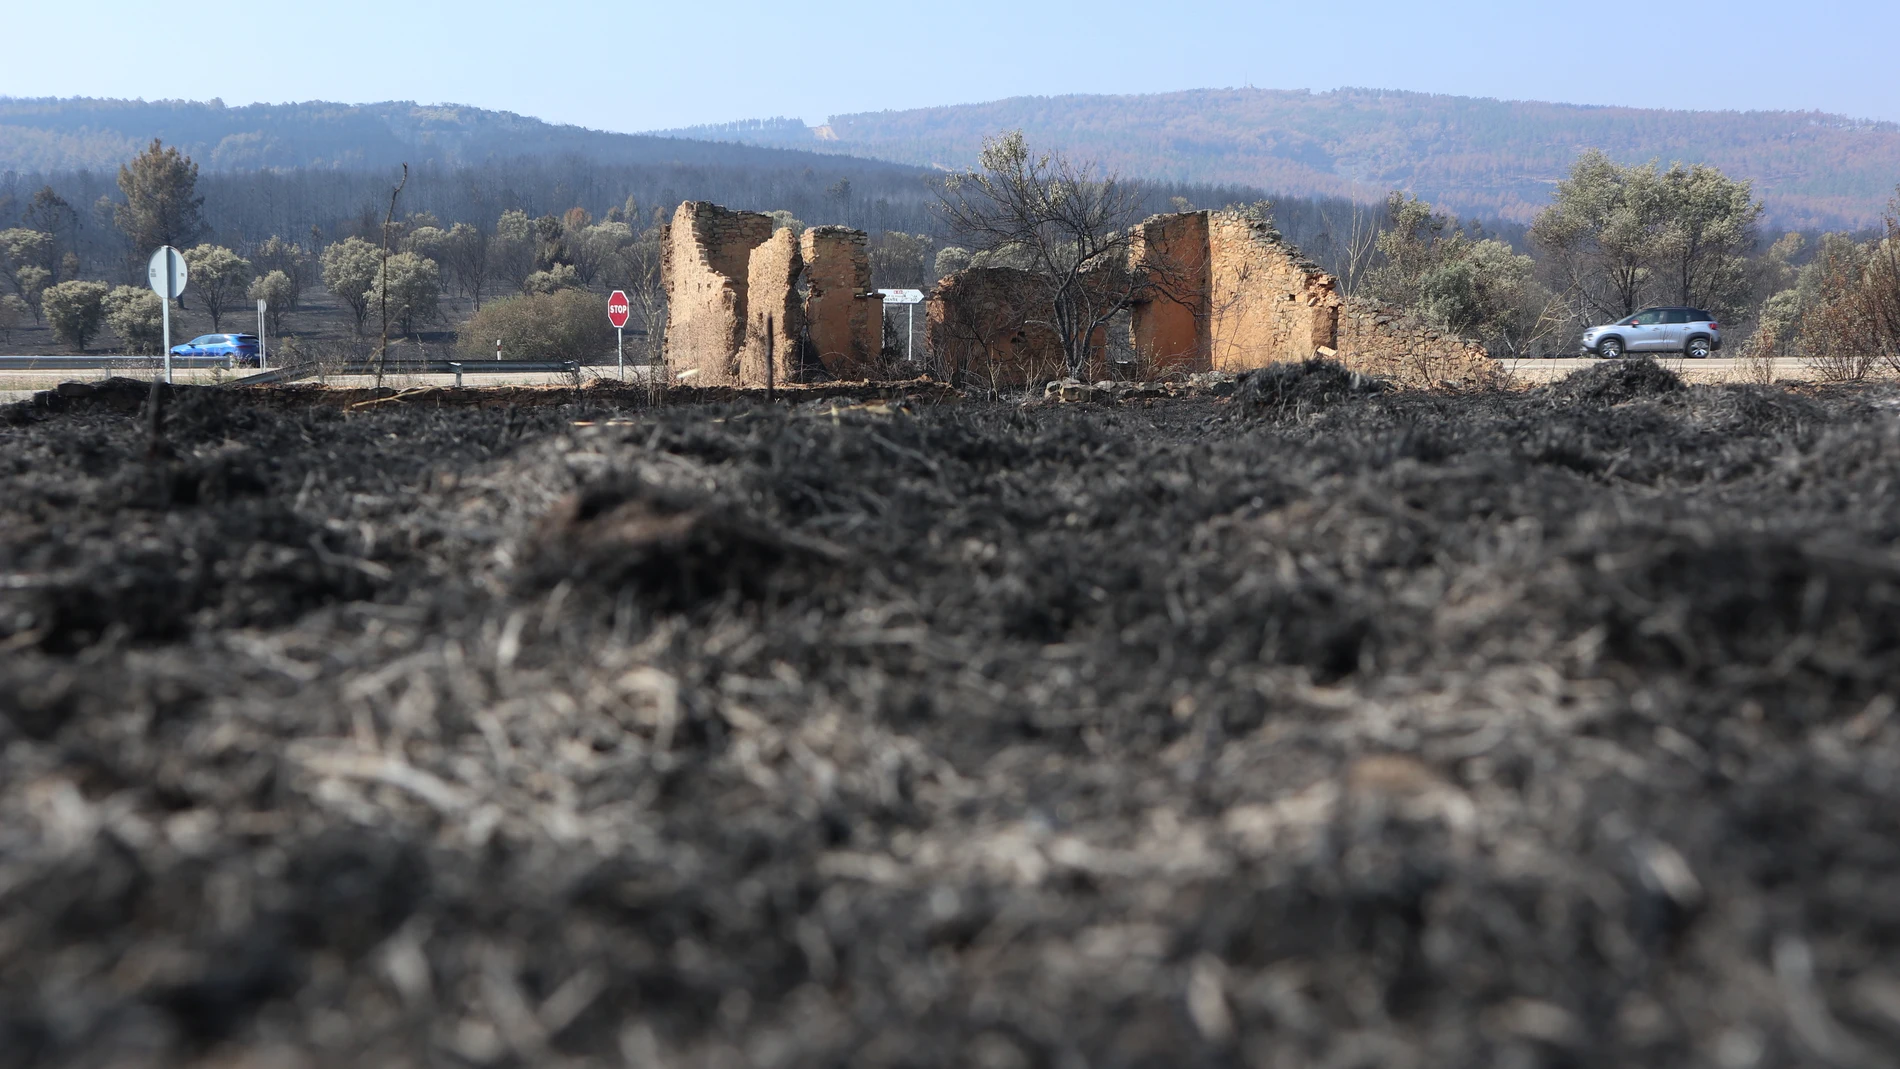 Vista de la zona afectada de San Martín de Tábara (Zamora), por el incendio forestal de Losacio (Zamora